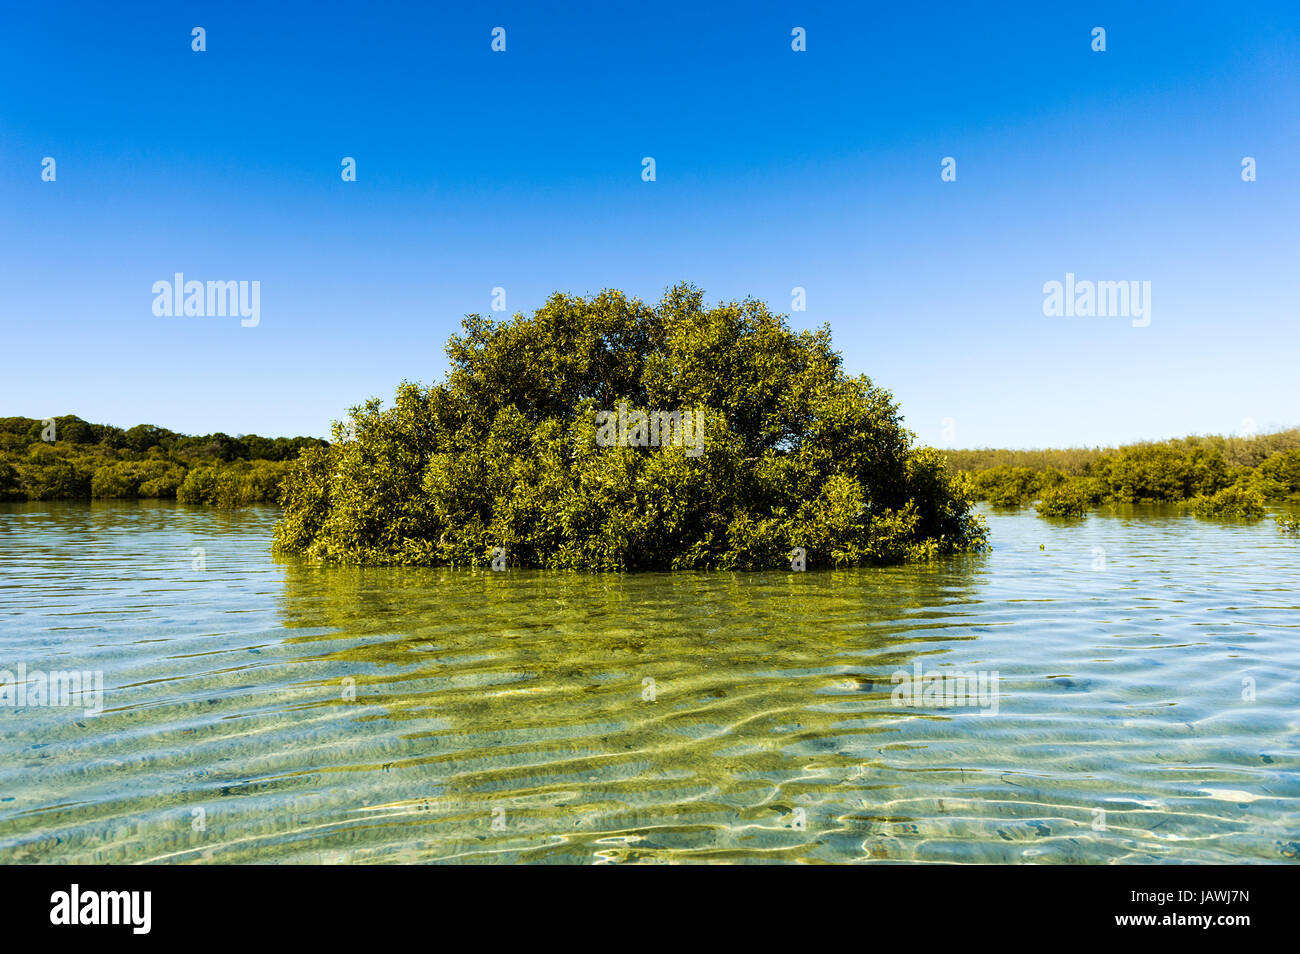 Ein grau Mangroven-Baum wächst im seichten Wasser der Lagune. Stockfoto